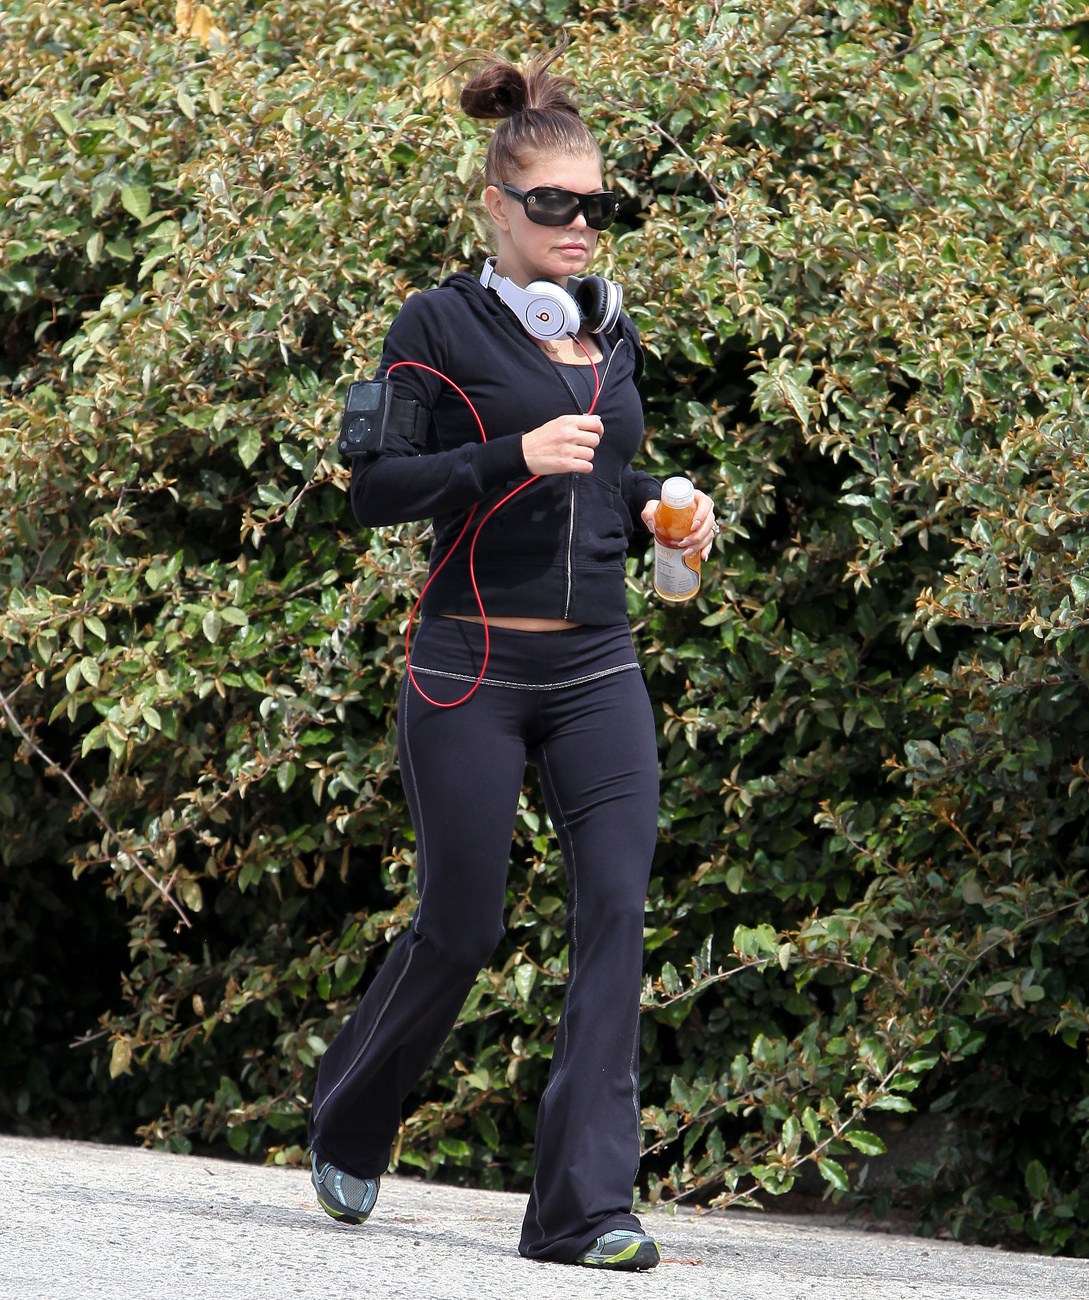 Reese Witherspoon nemcsak jógázik, hanem fut is